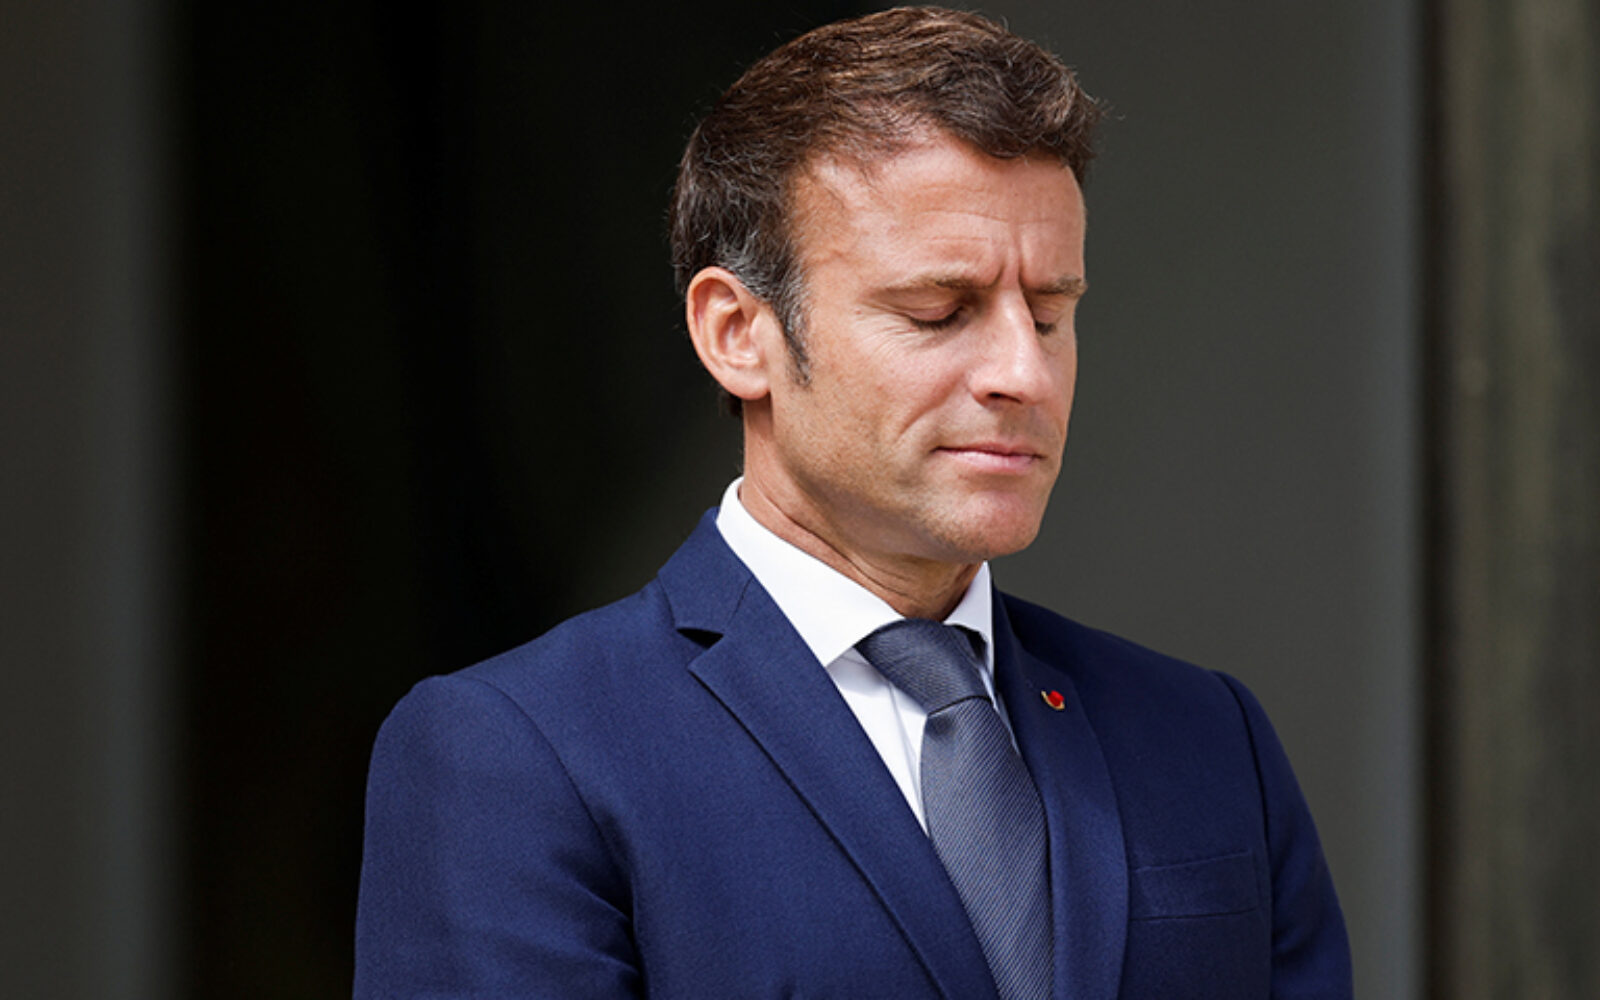 Hoće li Macron uskoro biti prisiljen presložiti vladu? - Poslovni dnevnik